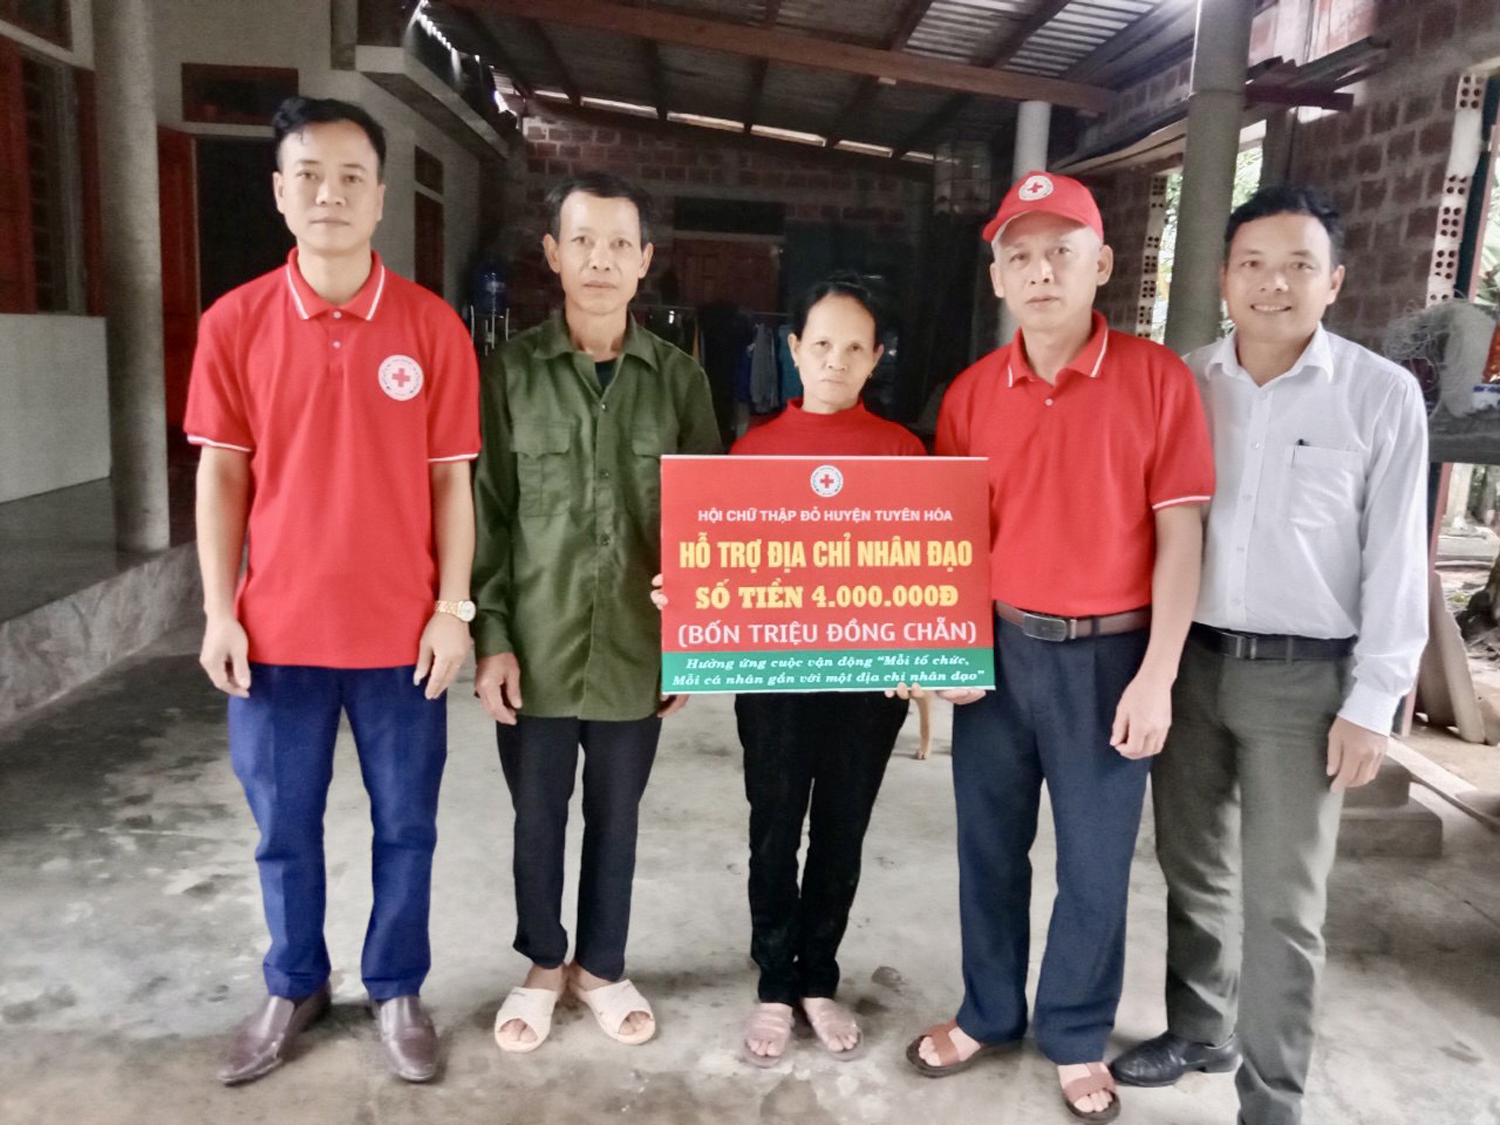 Hội CTĐ huyện Tuyên Hóa: Trao hỗ trợ địa chỉ nhân đạo